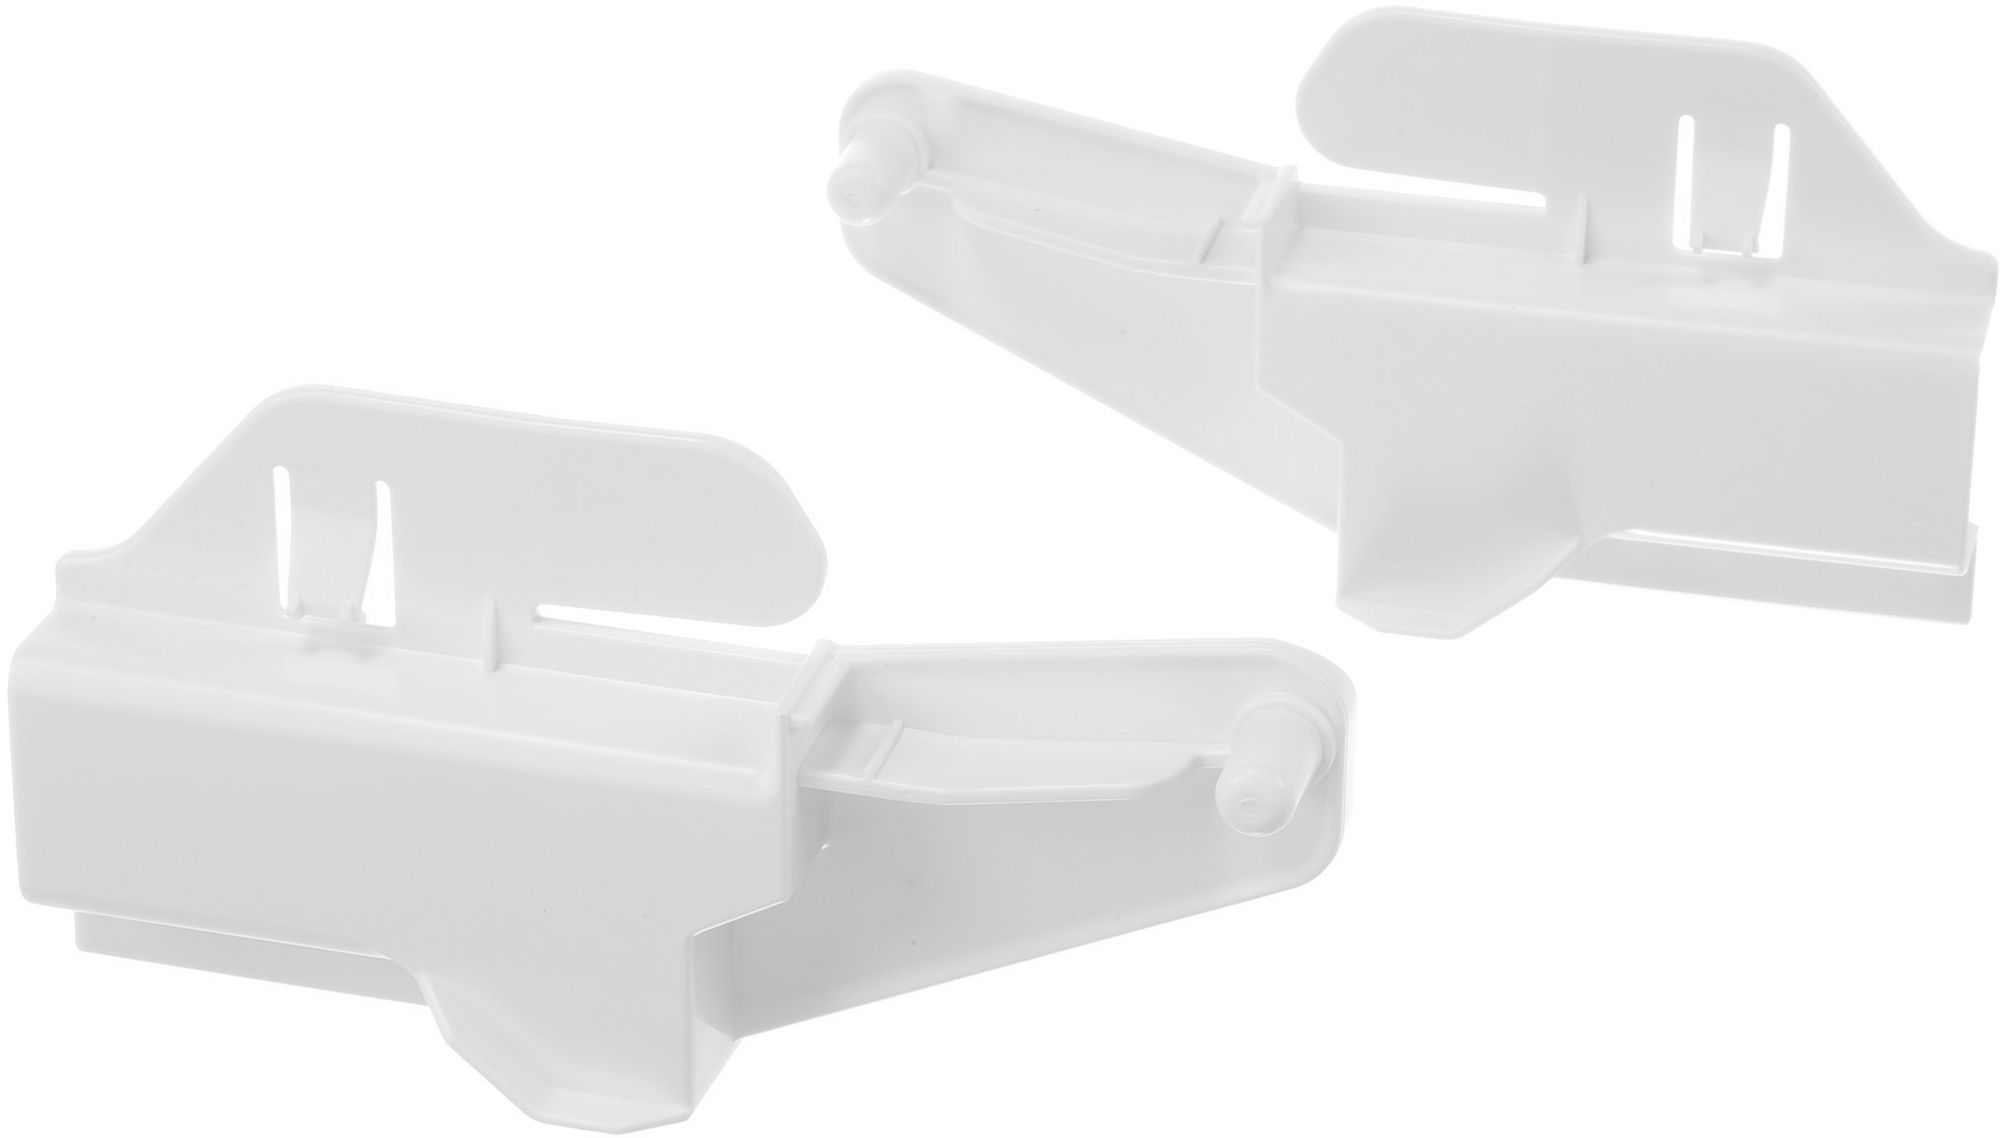 Комплект белых накладок (левая+правая) для ящиков встраиваемого, морозильника BOSCH GIN.., GI..